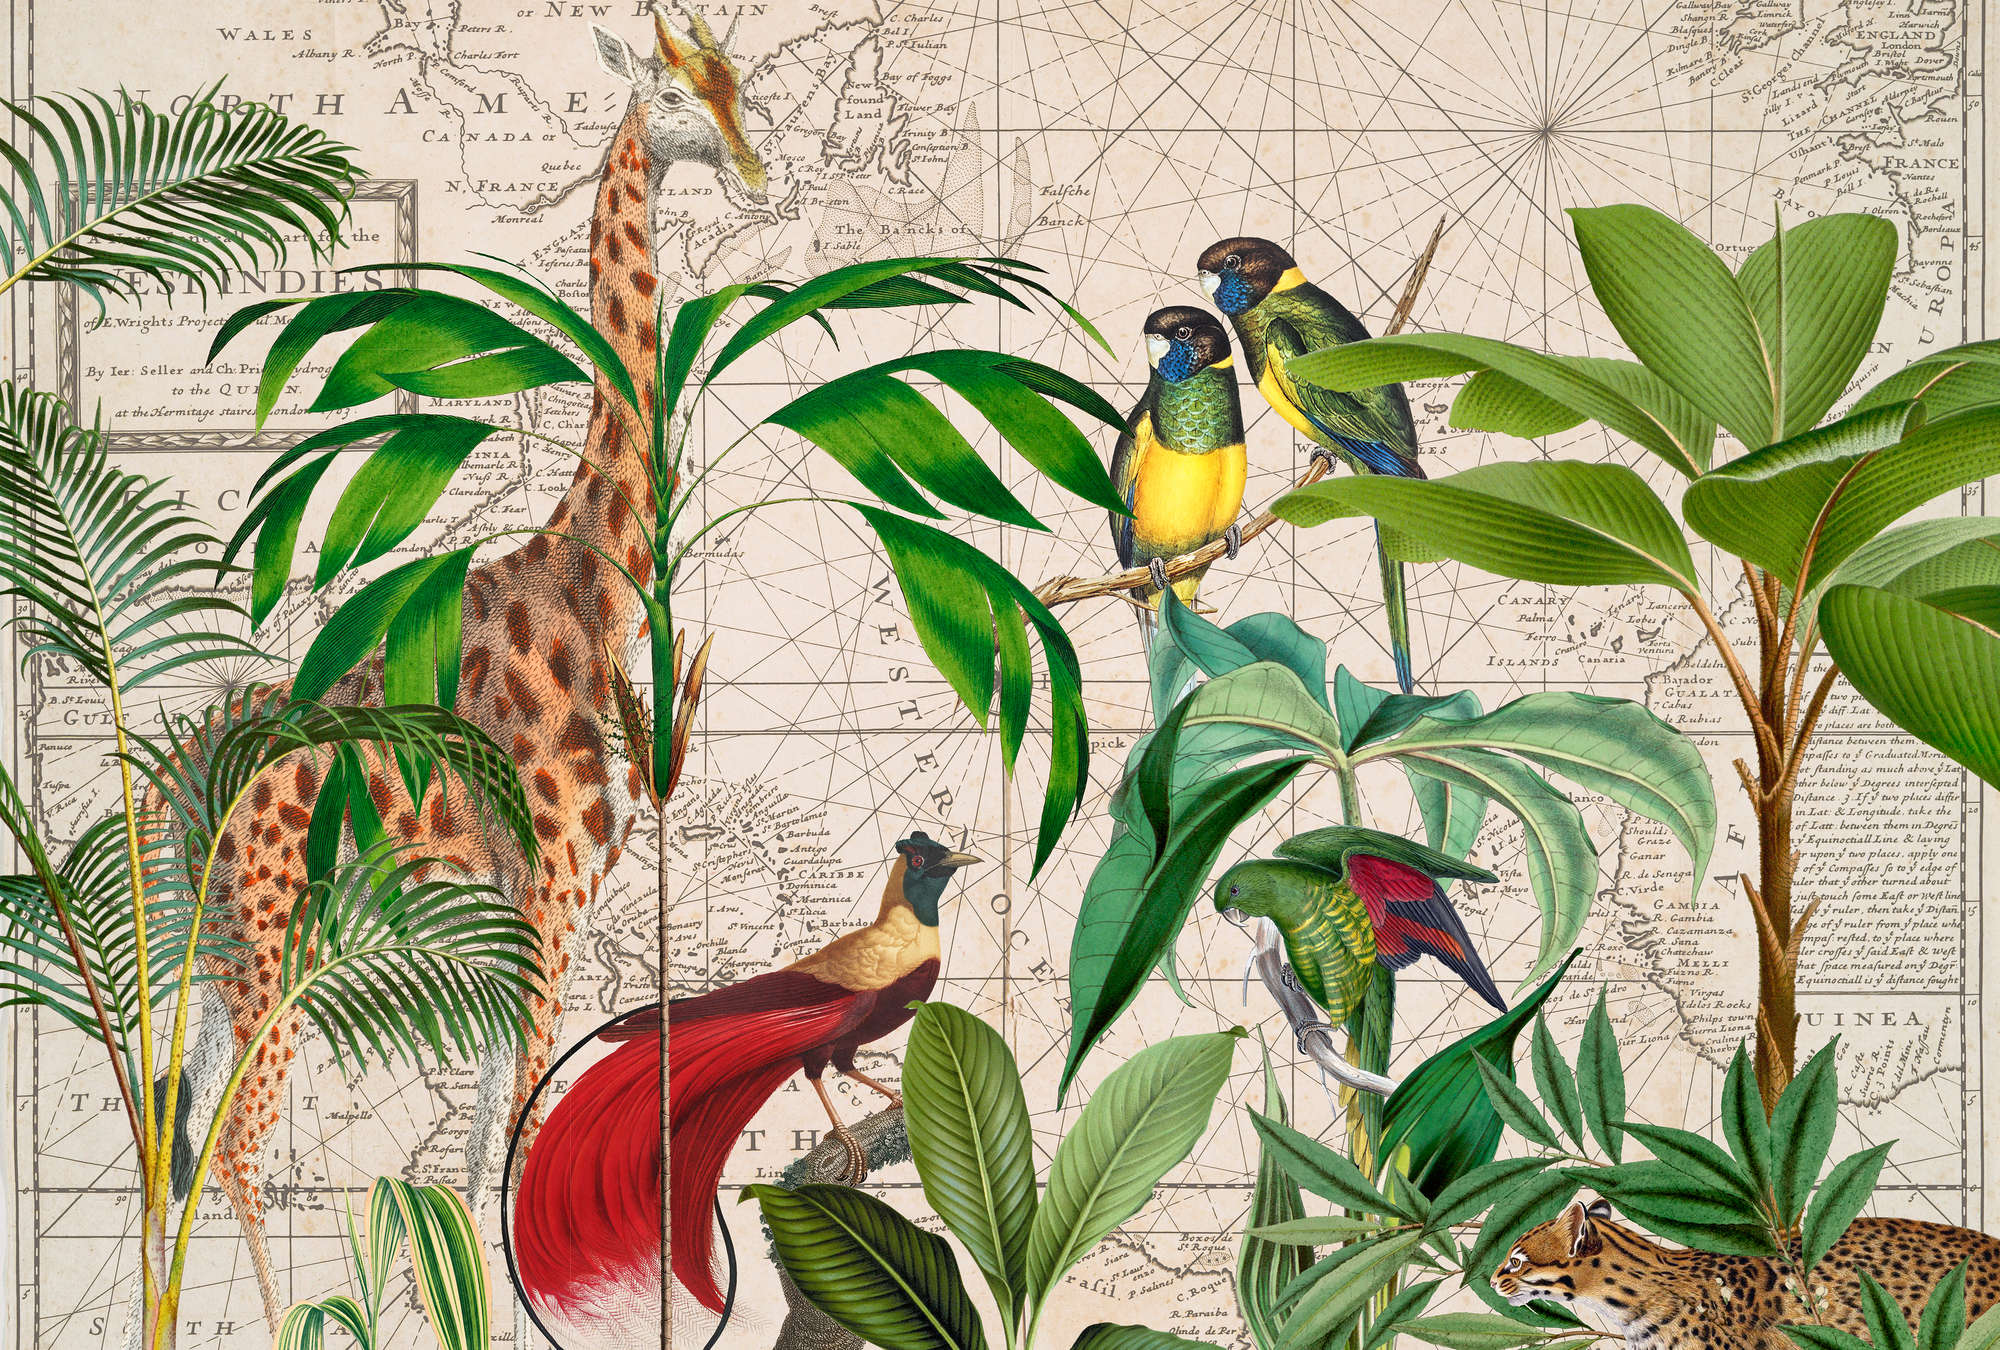             Wildlife Behang Vogels & Giraffen met Retro Collage Stijl Kaart
        